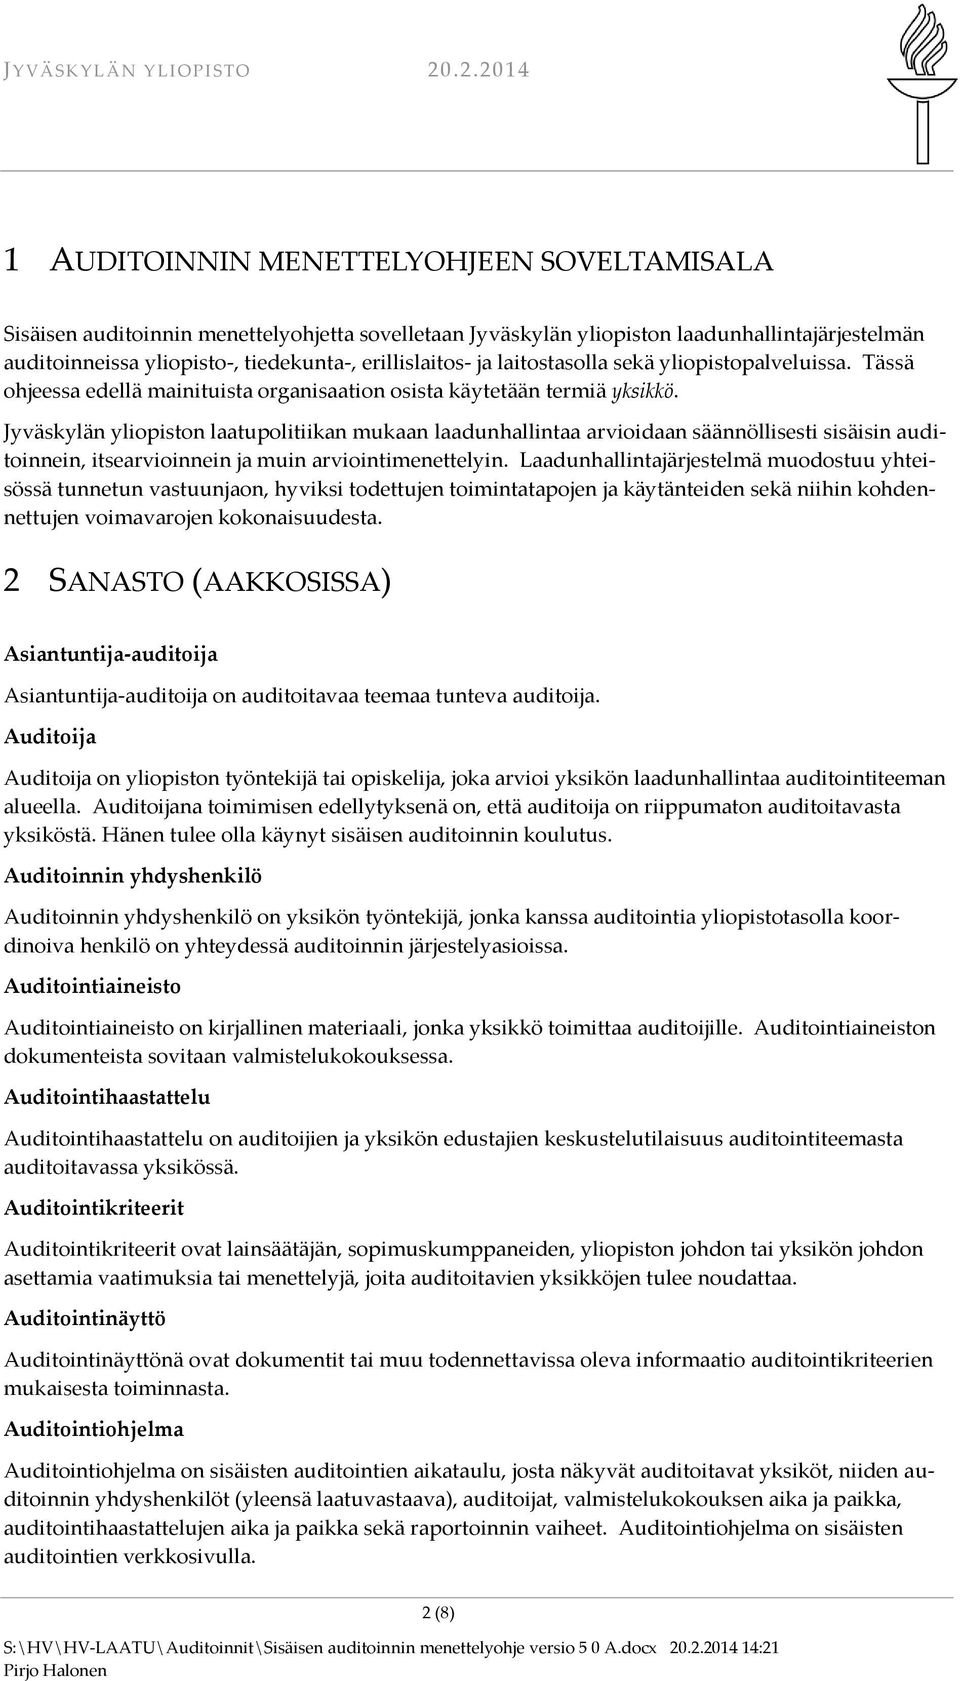 Jyväskylän yliopiston laatupolitiikan mukaan laadunhallintaa arvioidaan säännöllisesti sisäisin auditoinnein, itsearvioinnein ja muin arviointimenettelyin.